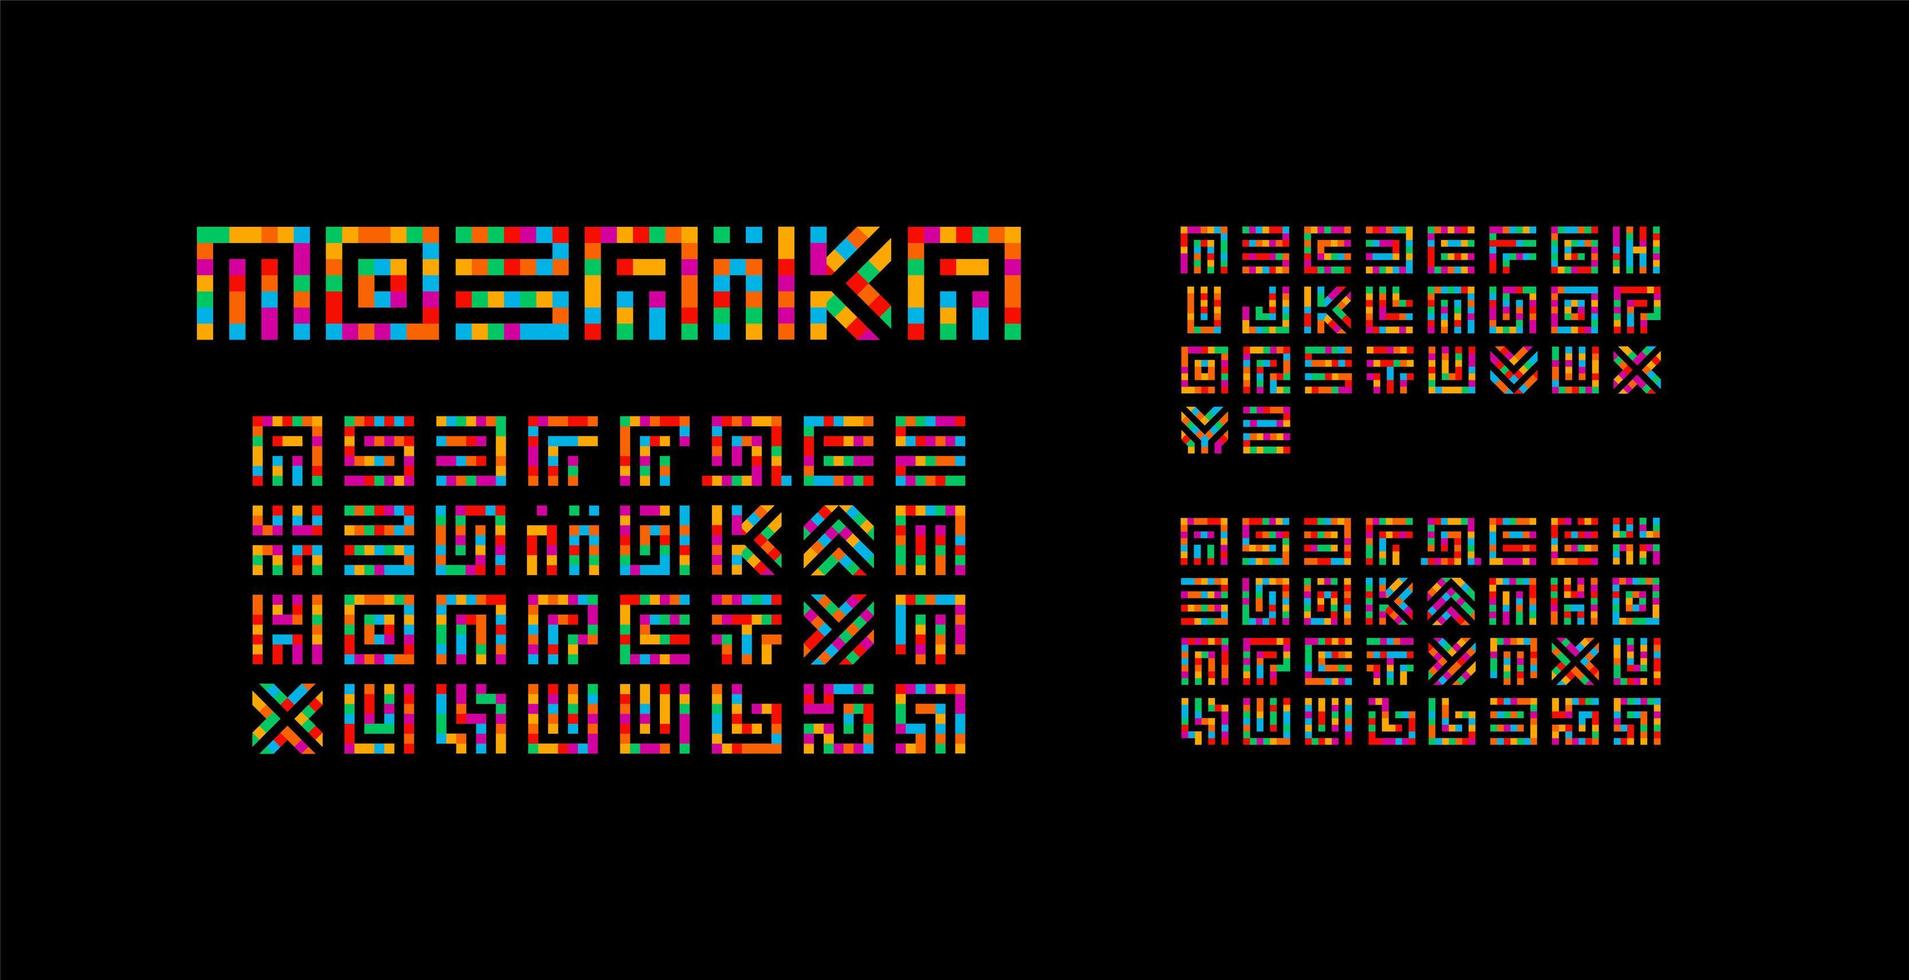 mosaico alfabeto ucraniano, inglés y ruso. diseño de tipografía de laberinto. vector de estilo de arte creativo letras latinas de cuadrados.